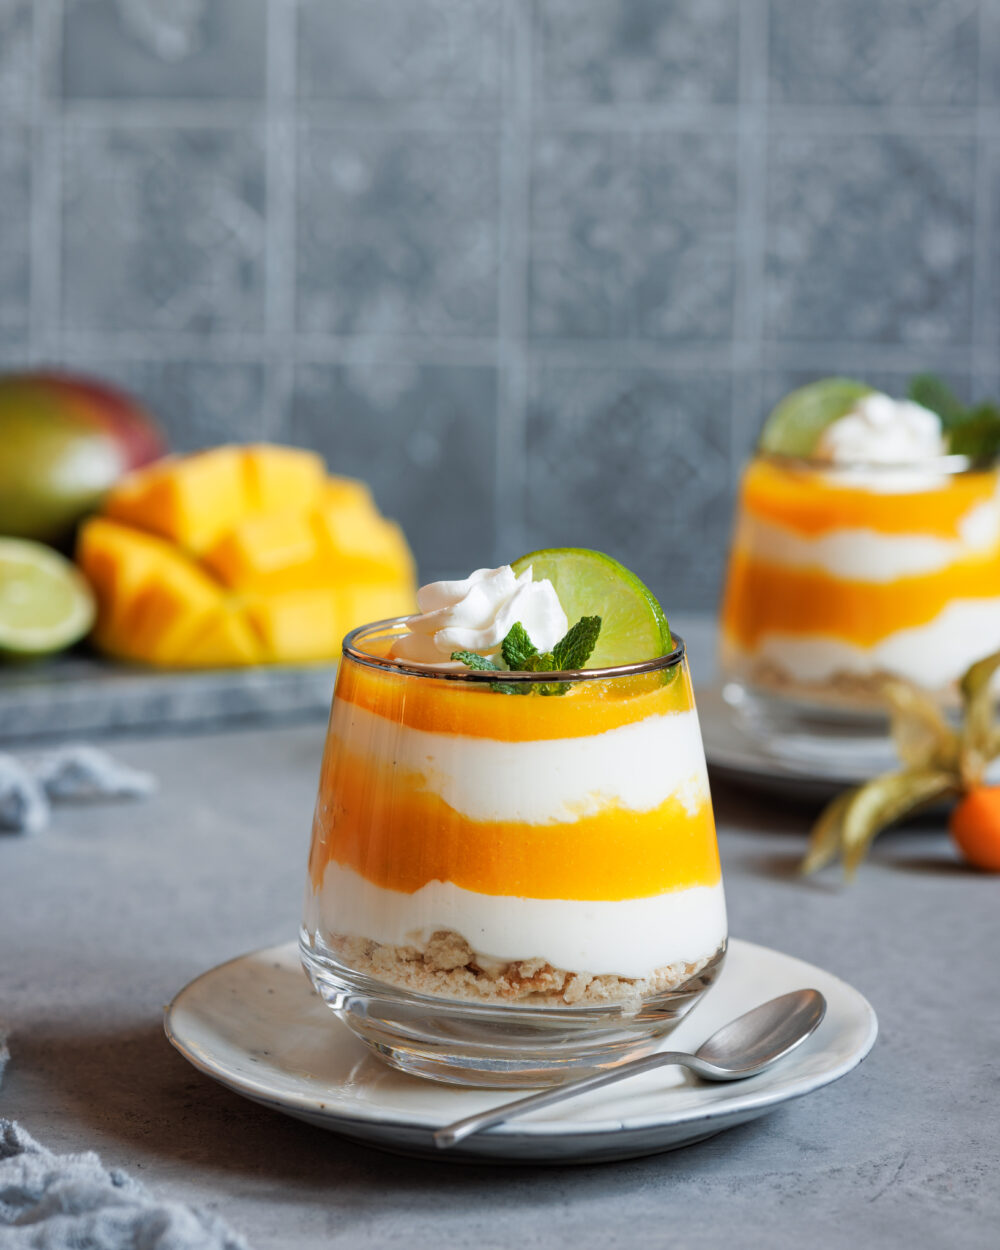 Schichtdessert mit Mango und Joghurt in einem Glas mit Sahne, Minze und Limette dekoriert.